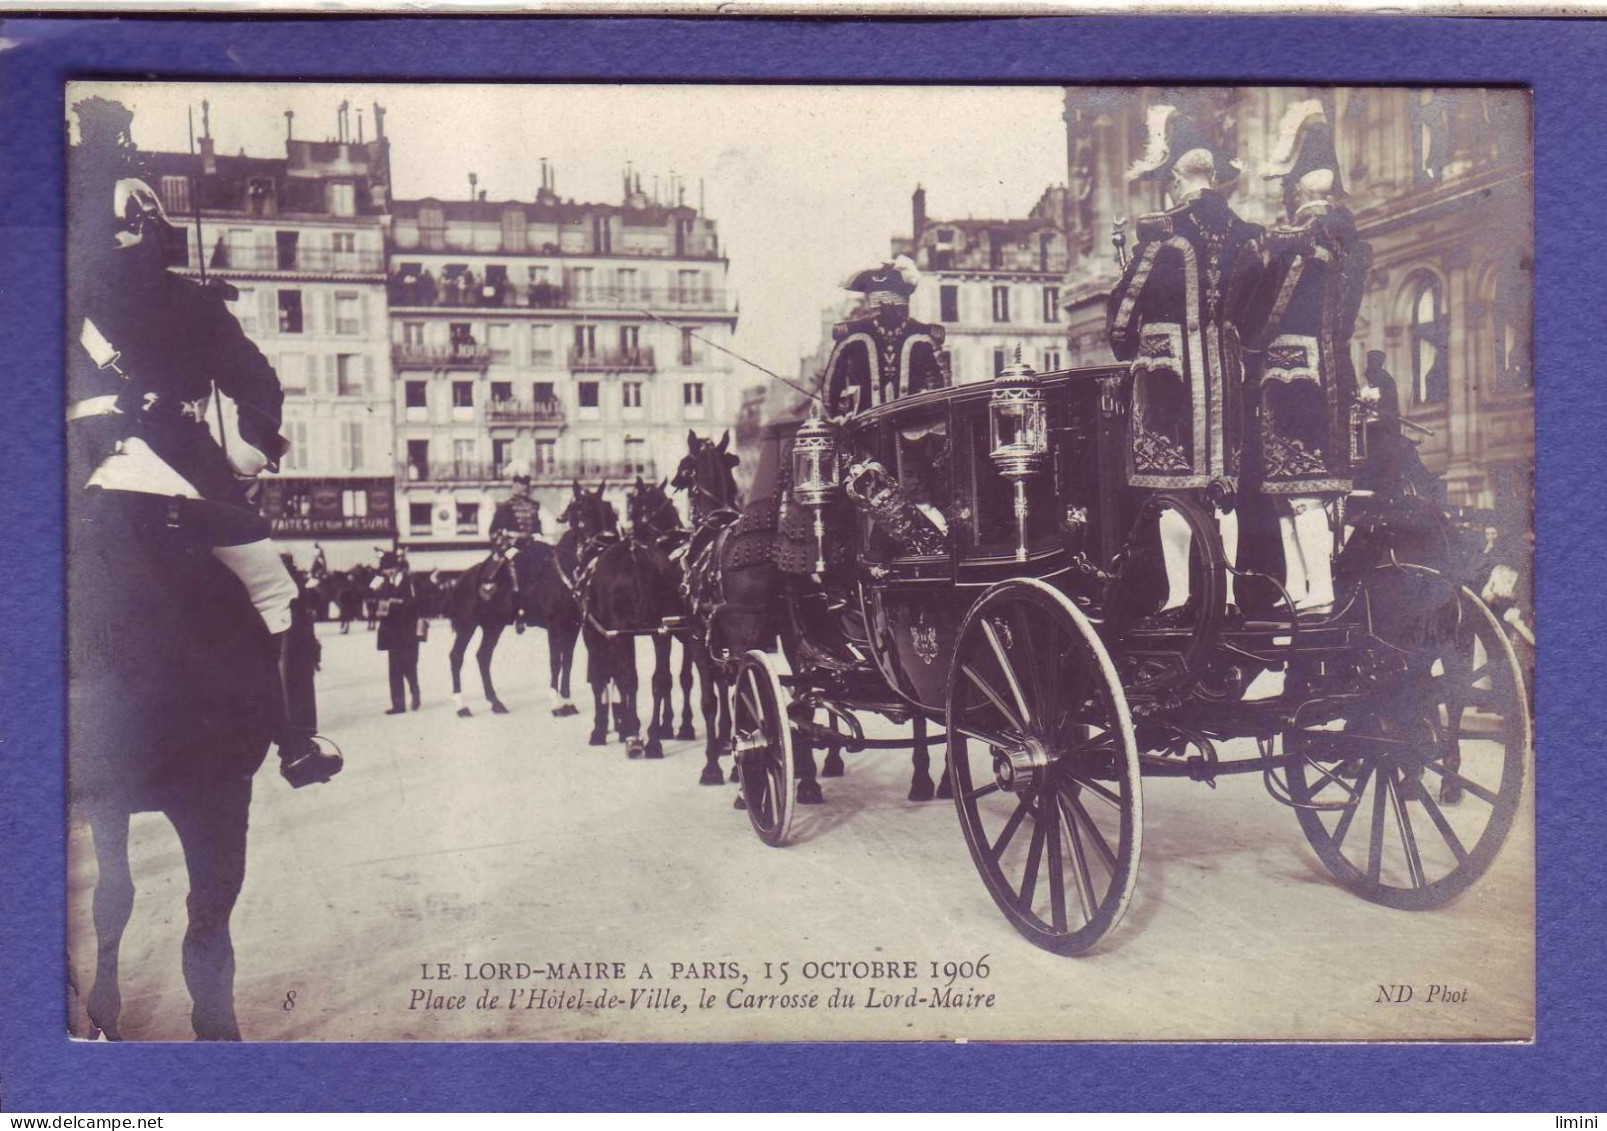 75 - PARIS - PLACE De L'HOTEL De VILLE - LORD MAIRE 15 OCTOBRE 1906 - ATTELAGE -  - Otros Monumentos